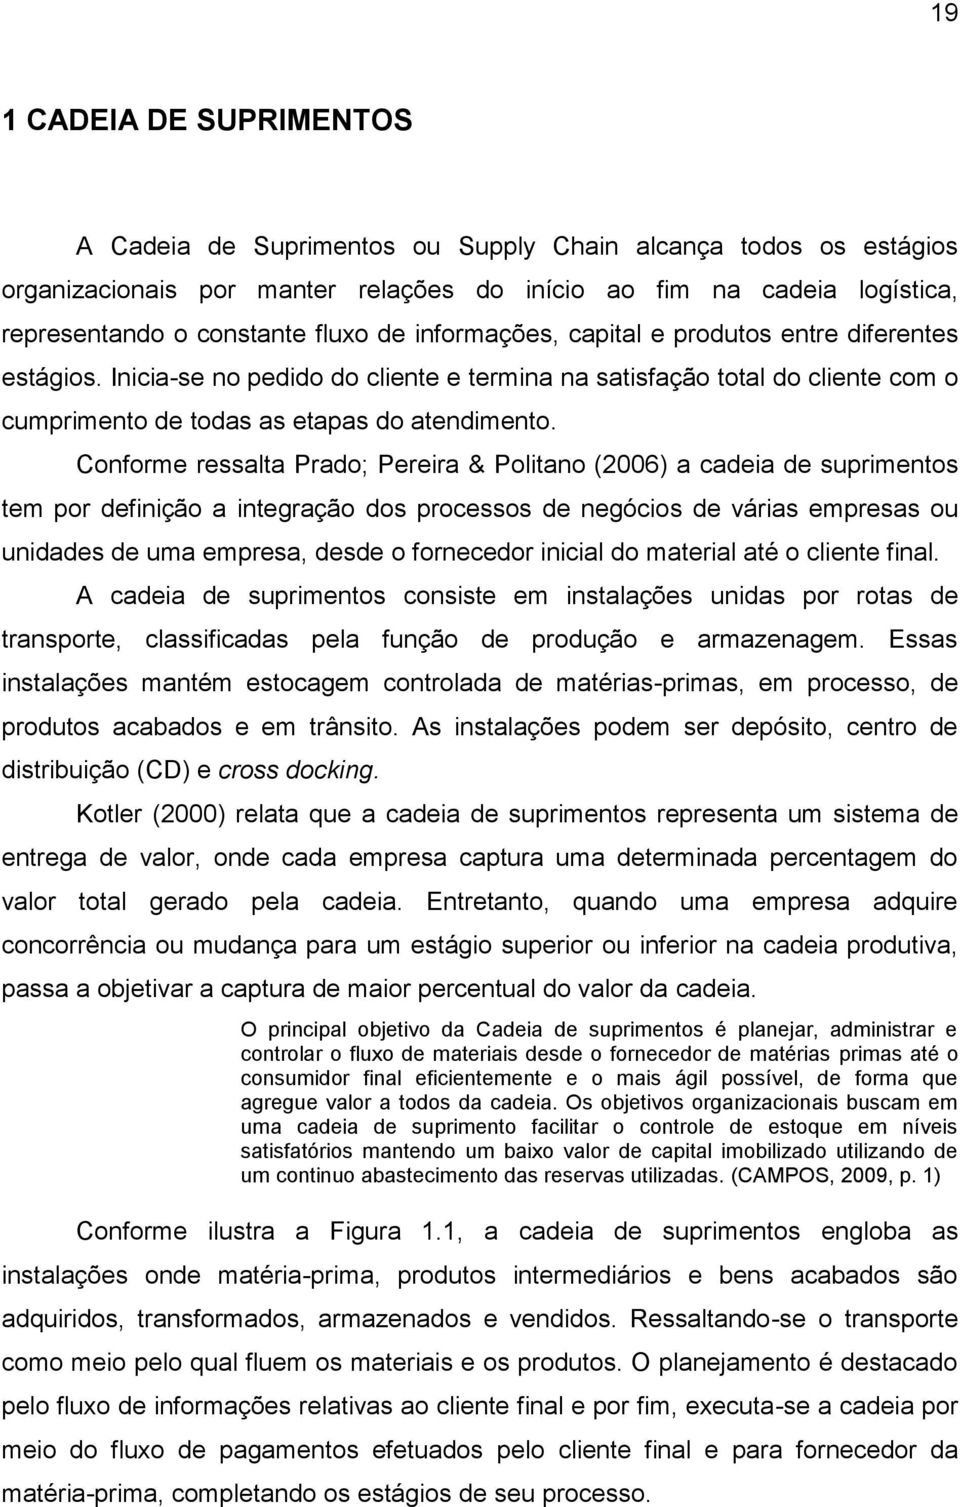 Conforme ressalta Prado; Pereira & Politano (2006) a cadeia de suprimentos tem por definição a integração dos processos de negócios de várias empresas ou unidades de uma empresa, desde o fornecedor